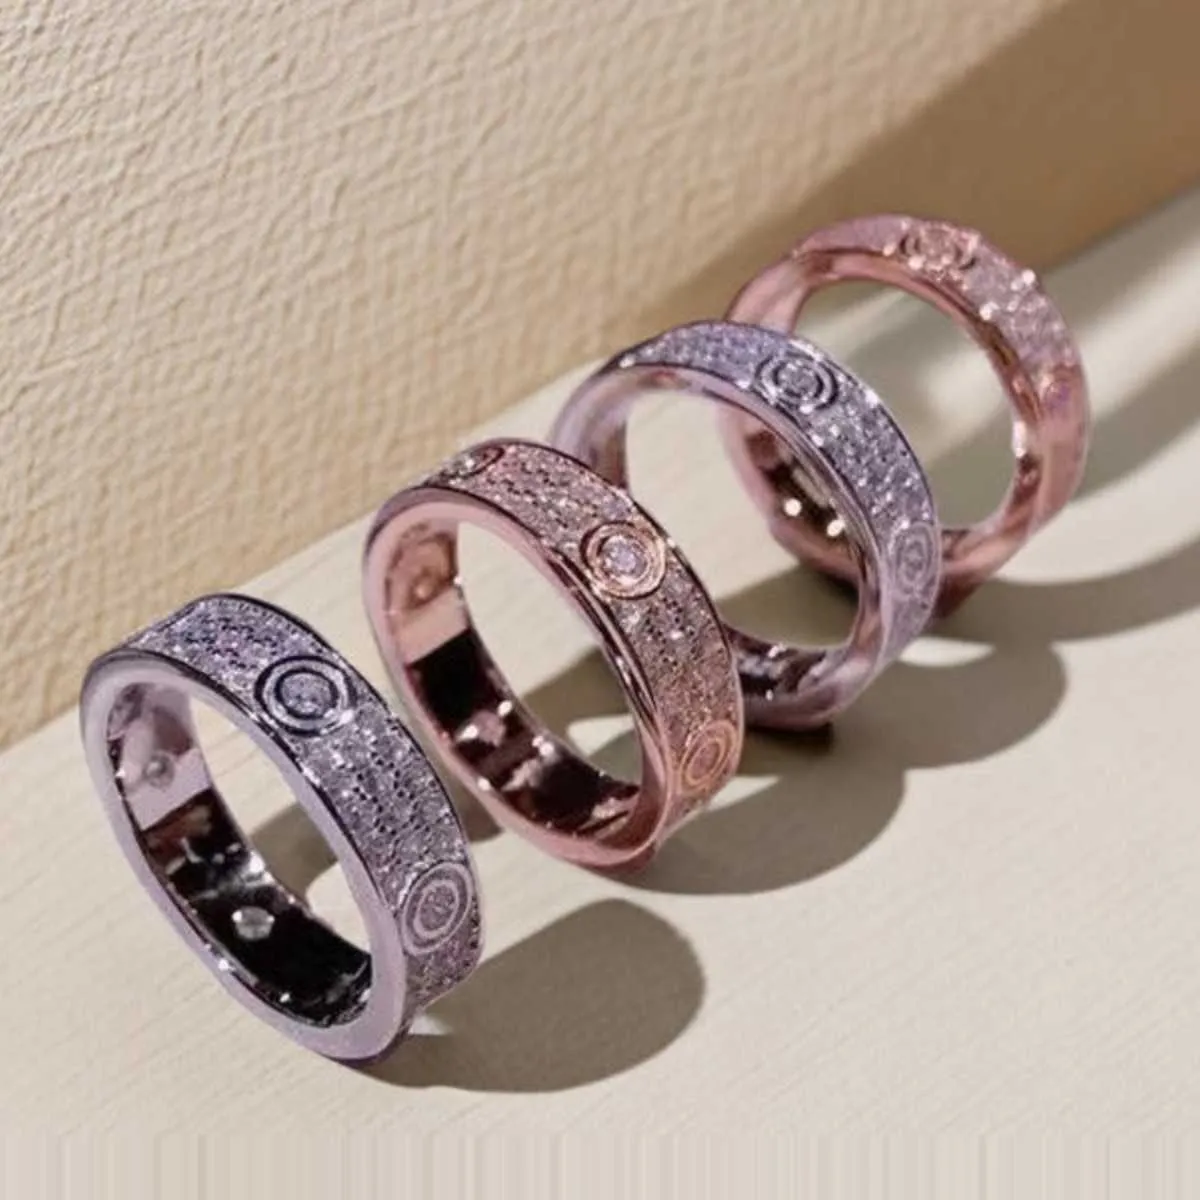 Designer beliebter Carter High Edition 18K Roségold Ring Full Sky Star Diamond Love Wide und Schmale drei Reihen, die für Männer Frauen passen